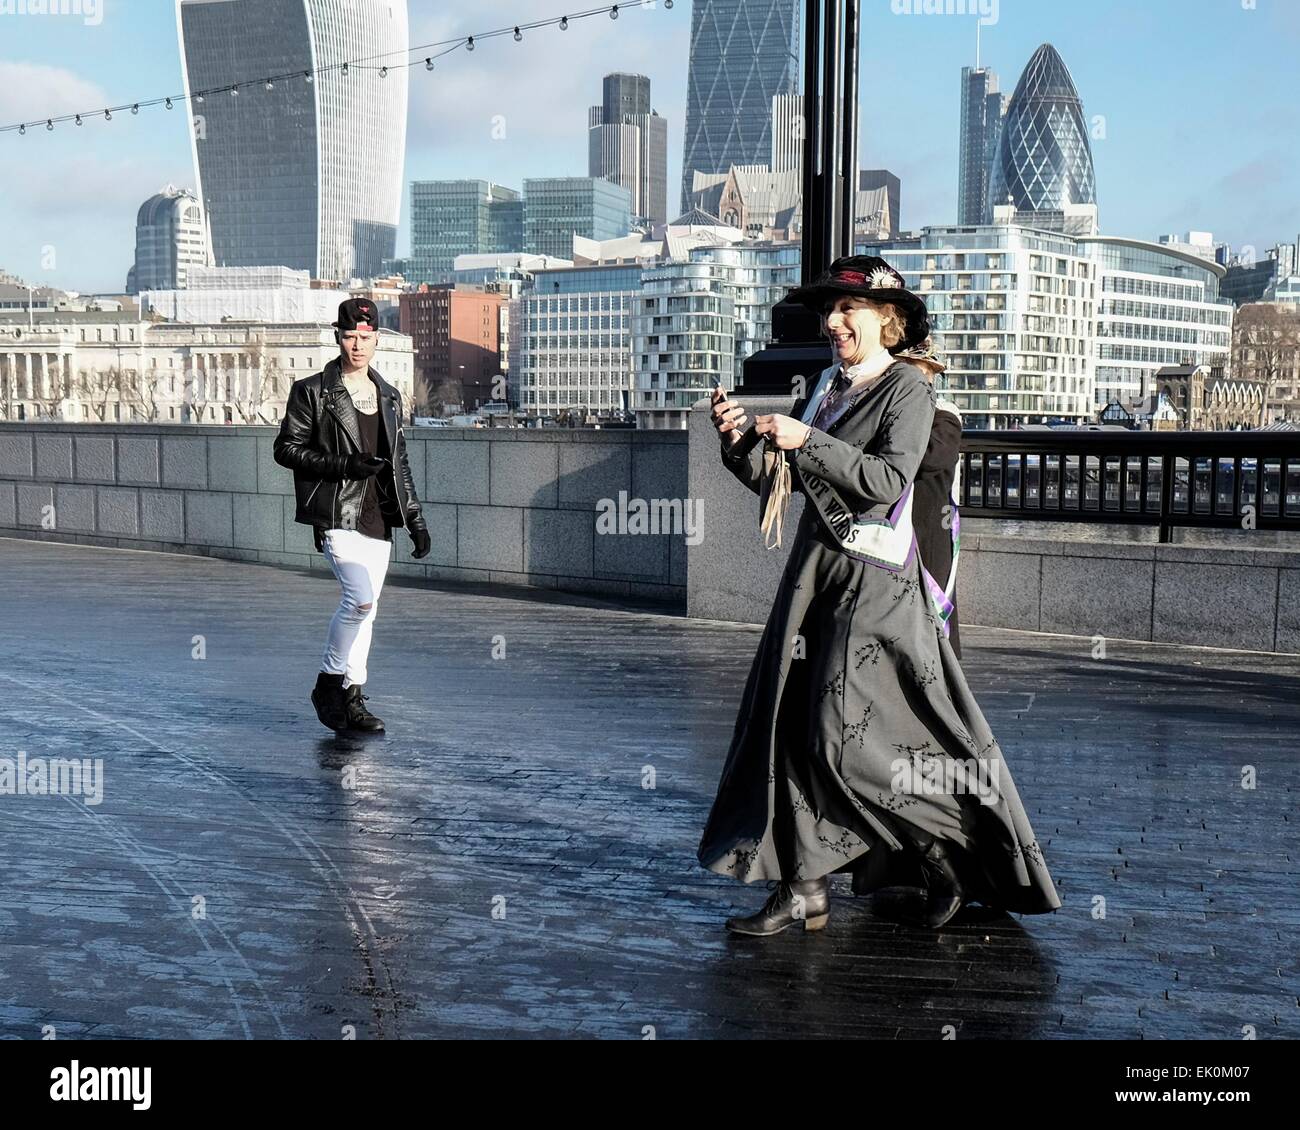 Ein junger Mann im modernen Kleid starrt eine Frau im Zeitraum Suffragette Kleid, als er vorbei geht Stockfoto